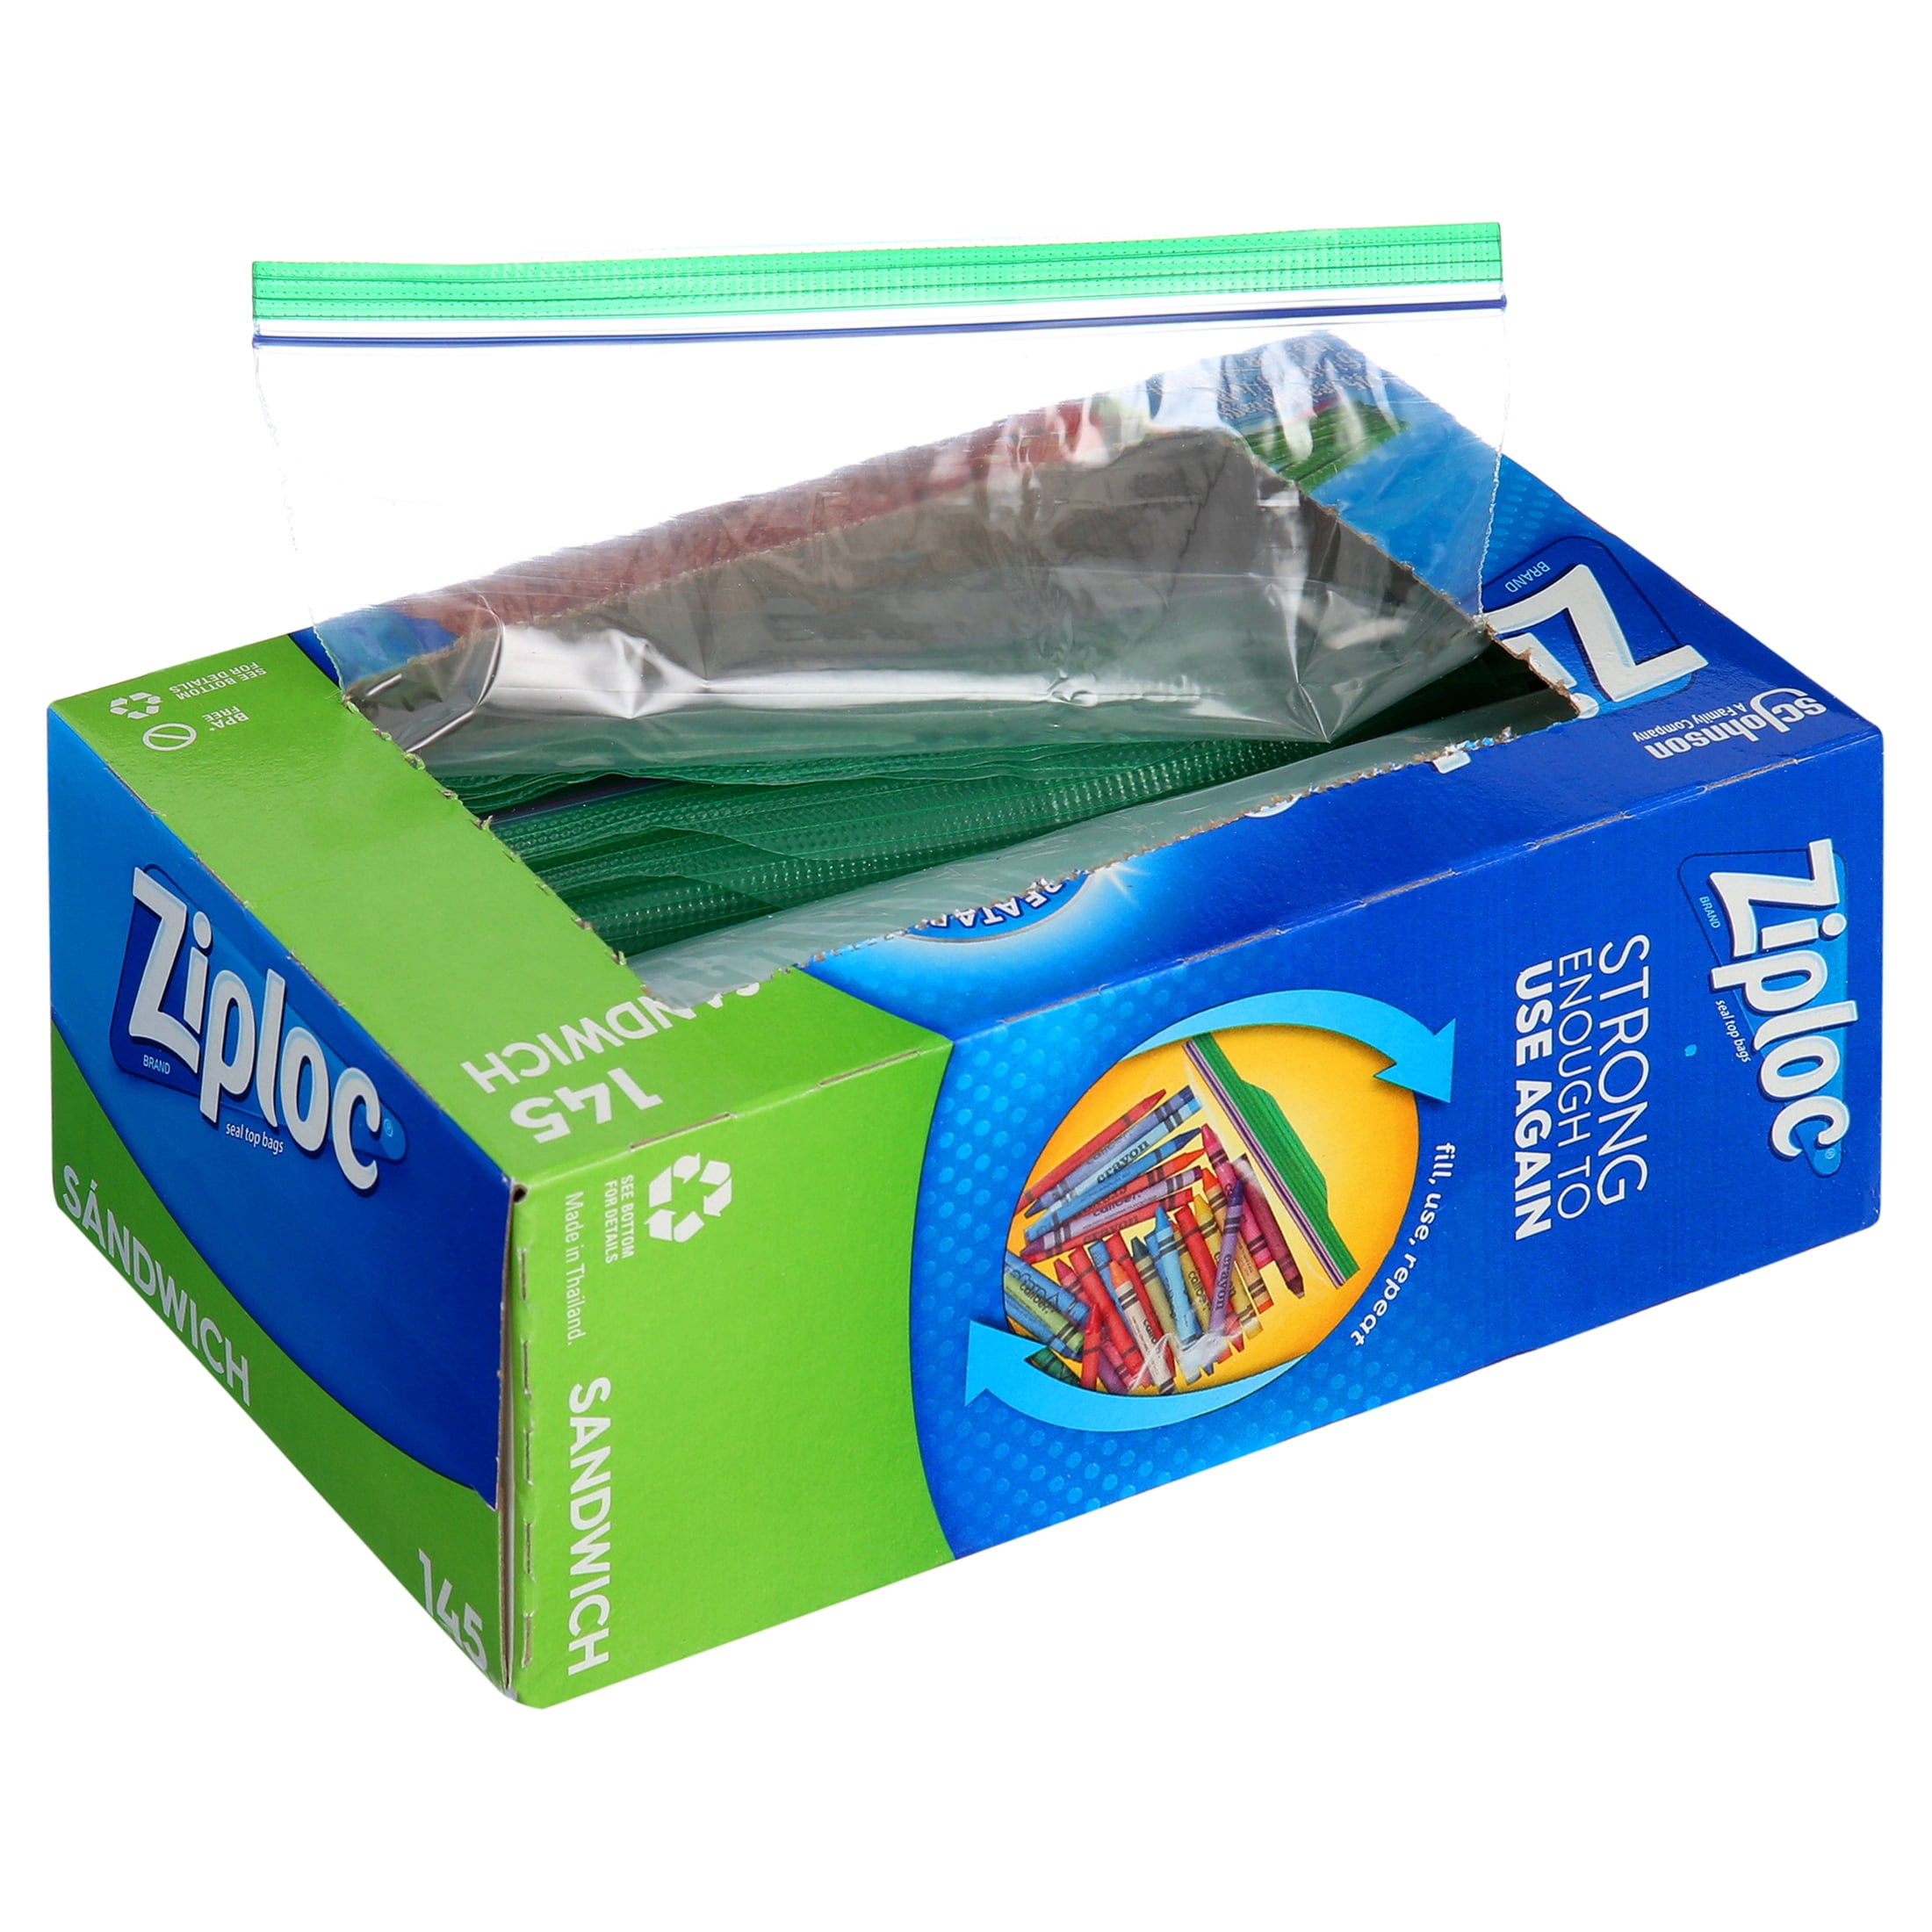 Ziploc Seal Top Bag, Sandwich, 145-count, 4-pack